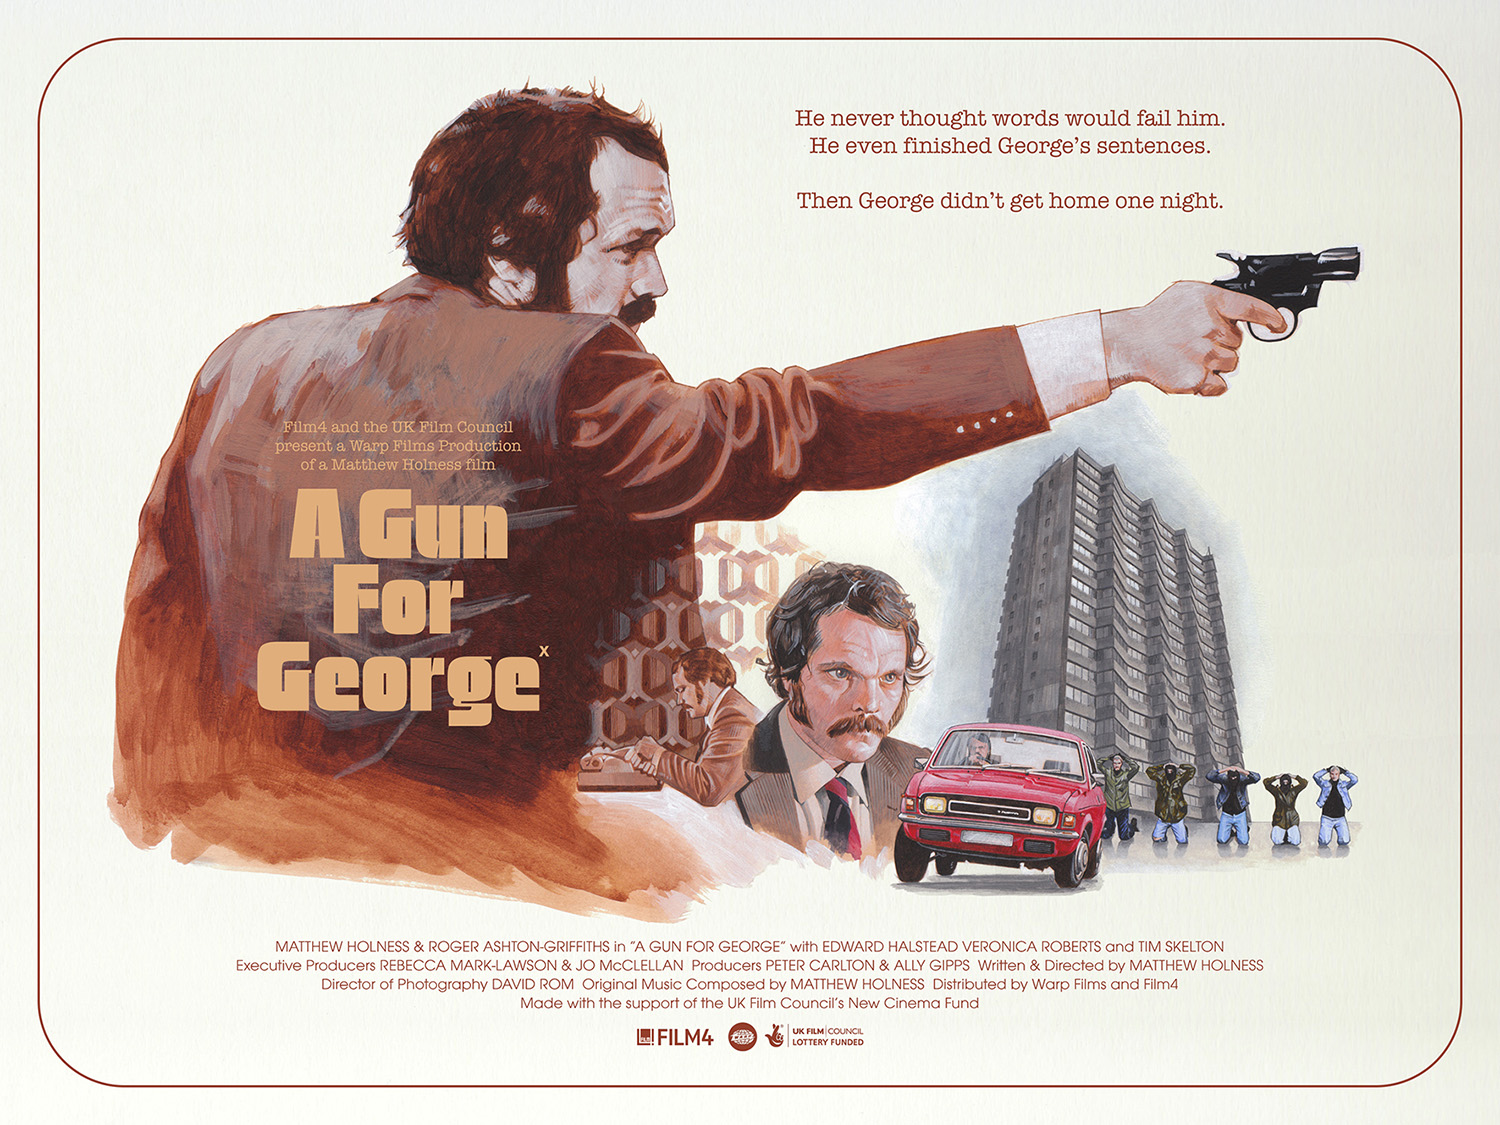 A Gun For George